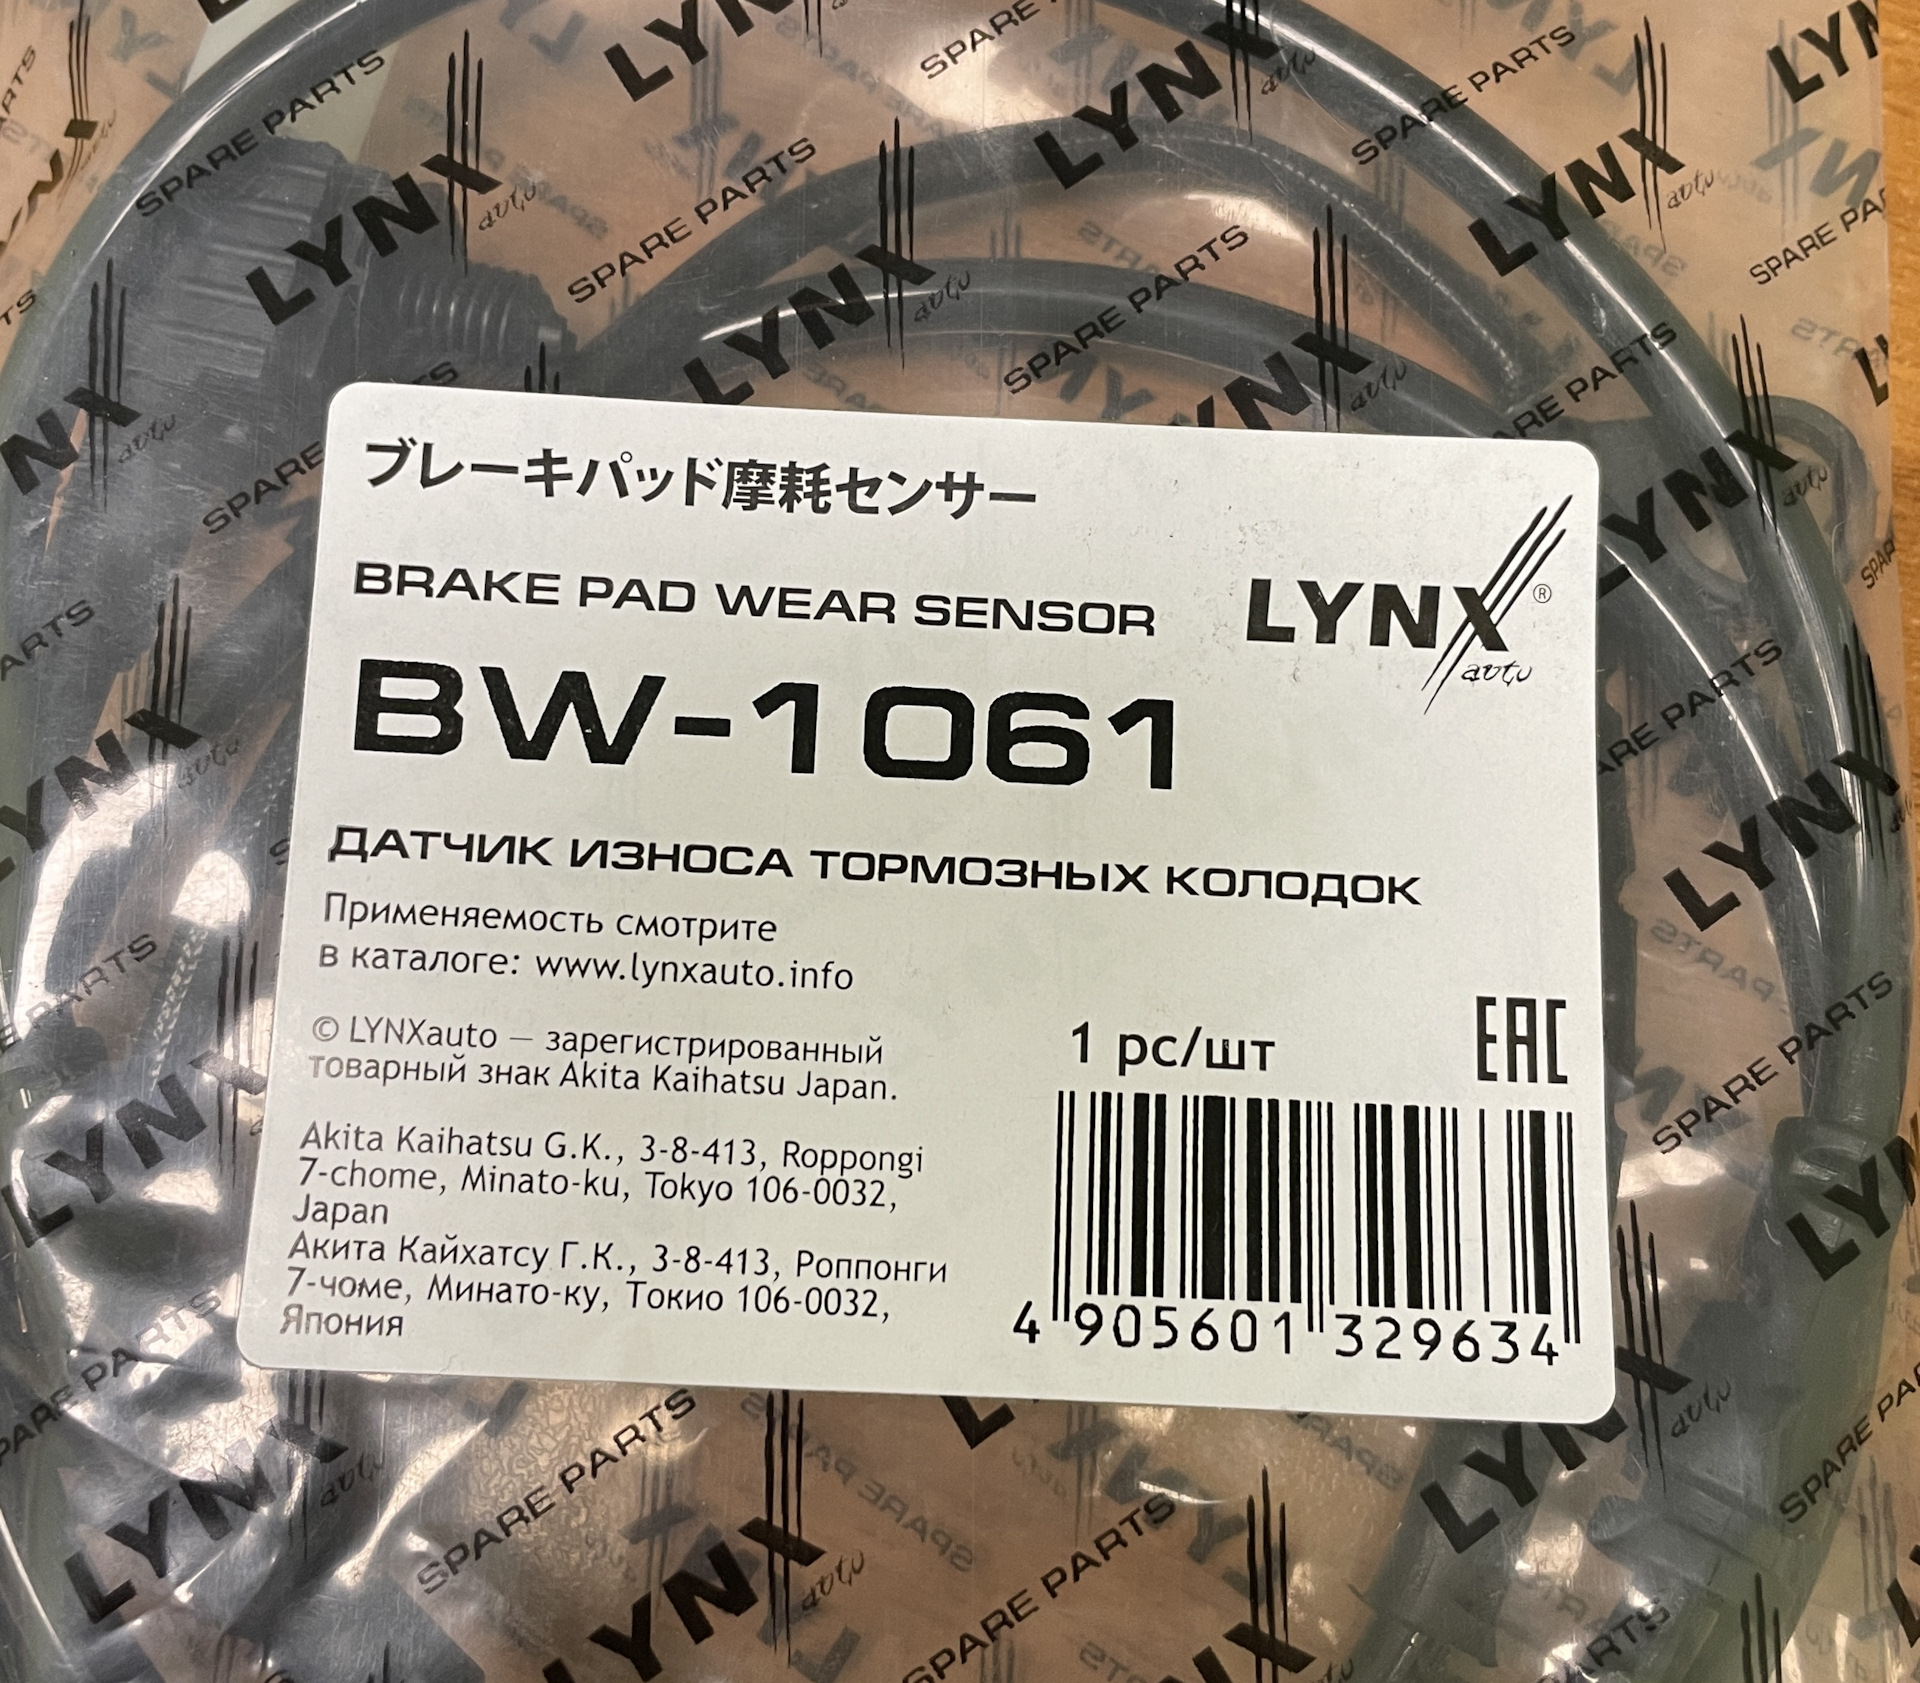 Производитель lynx отзывы. Деталь износа e307488. Lynx SG-1061. Палец jev00066 - производитель lget.